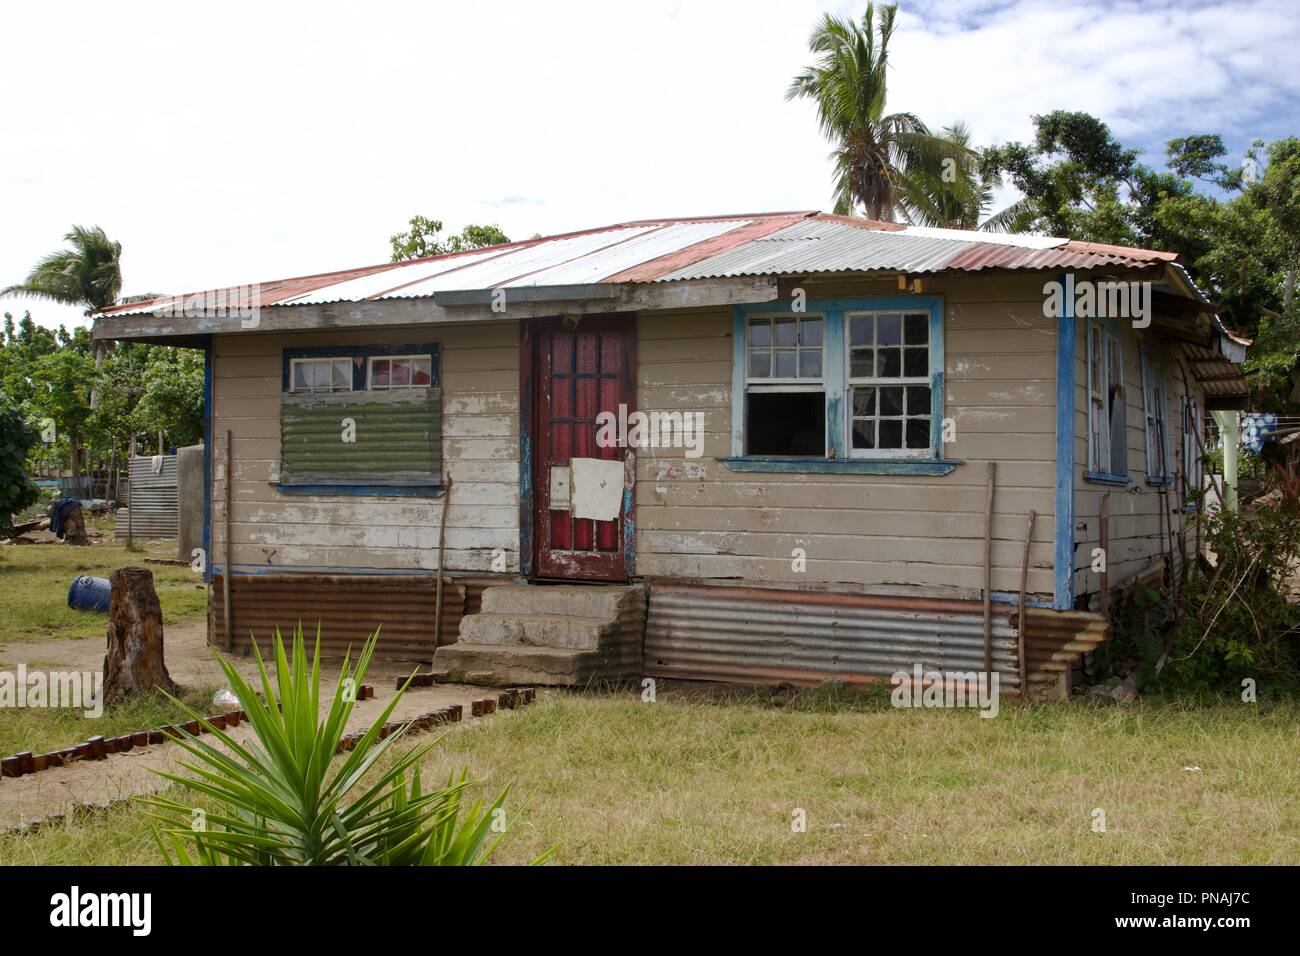 Une maison de famille avec une surface à l'intérieur d'un village sur l'île de Tonga Atata, Royaume des Tonga Banque D'Images